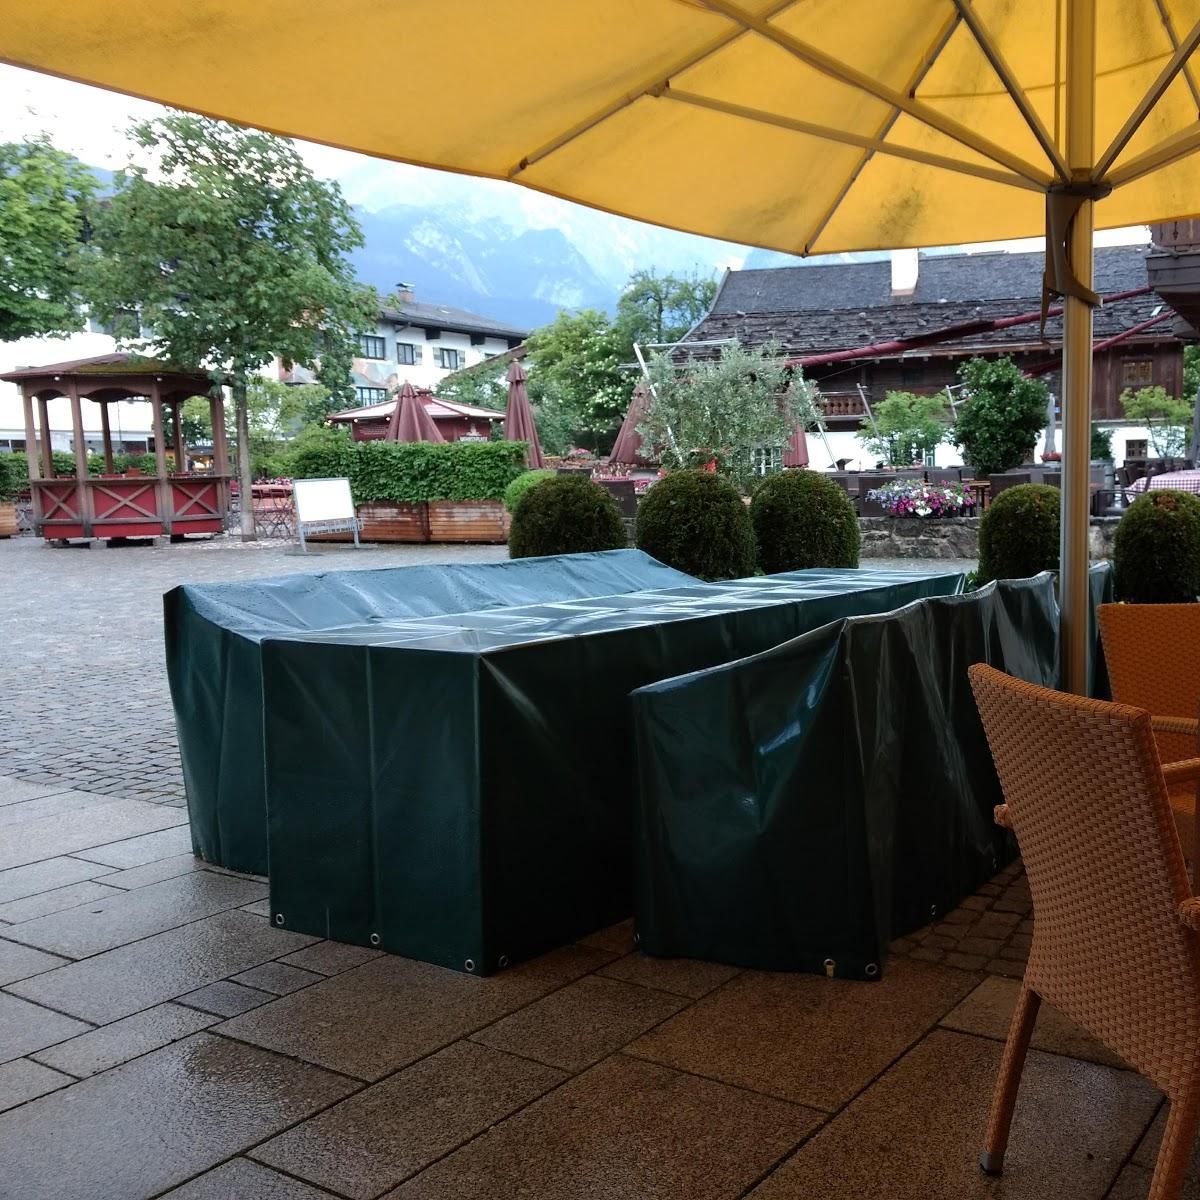 Restaurant "Gasthaus zur Schranne" in  Garmisch-Partenkirchen